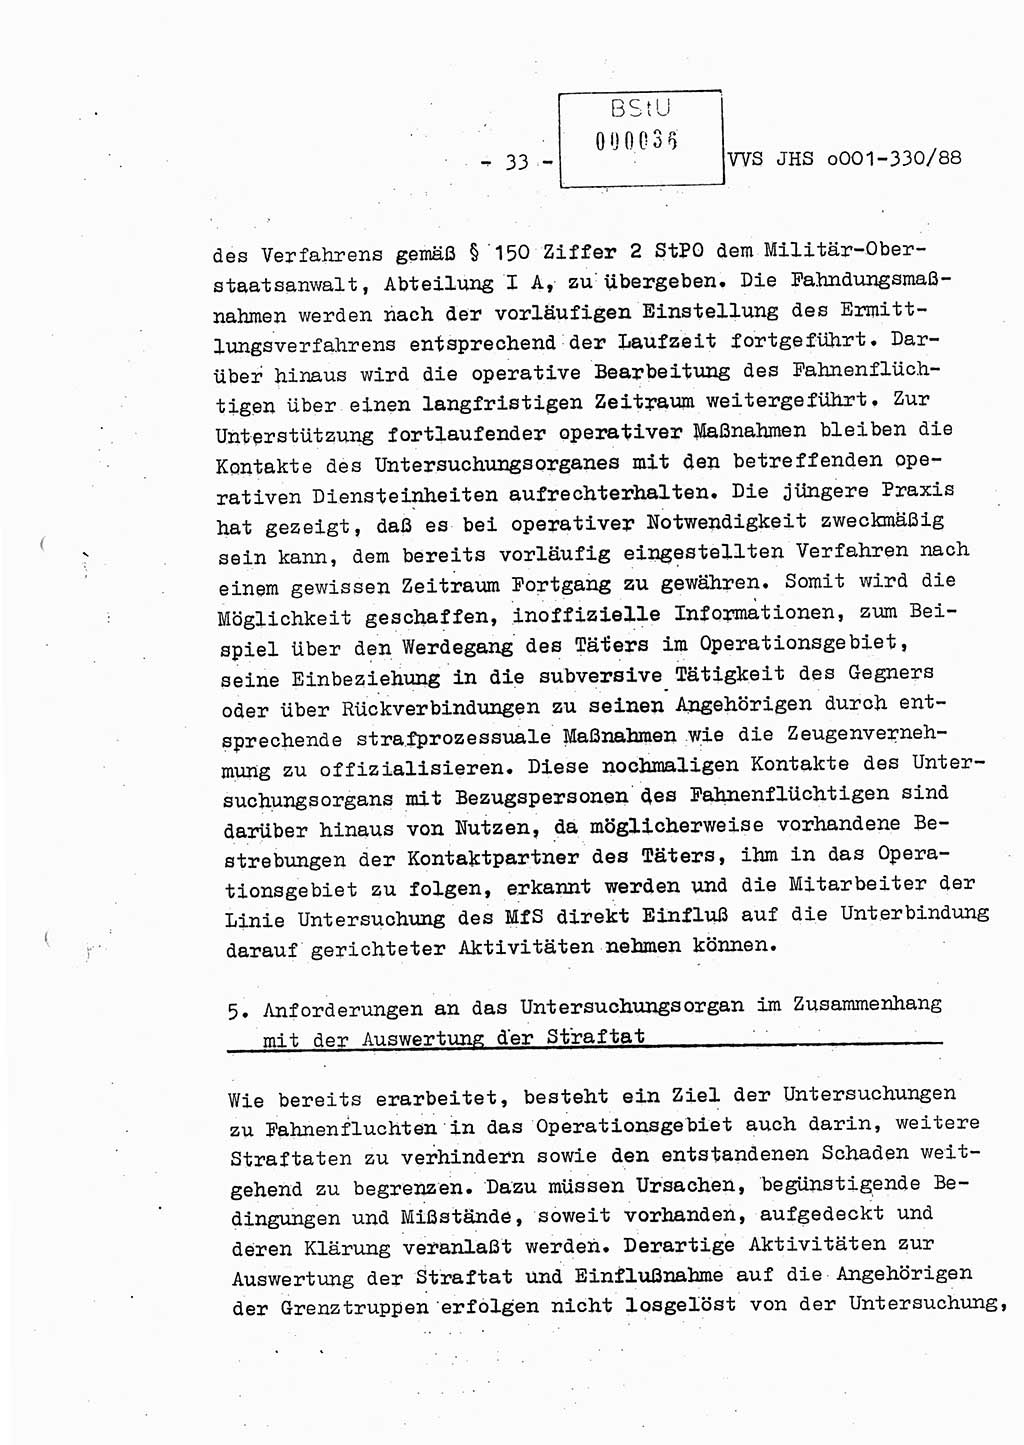 Diplomarbeit Offiziersschüler Thomas Mühle (HA Ⅸ/6), Ministerium für Staatssicherheit (MfS) [Deutsche Demokratische Republik (DDR)], Juristische Hochschule (JHS), Vertrauliche Verschlußsache (VVS) o001-330/88, Potsdam 1988, Seite 33 (Dipl.-Arb. MfS DDR JHS VVS o001-330/88 1988, S. 33)